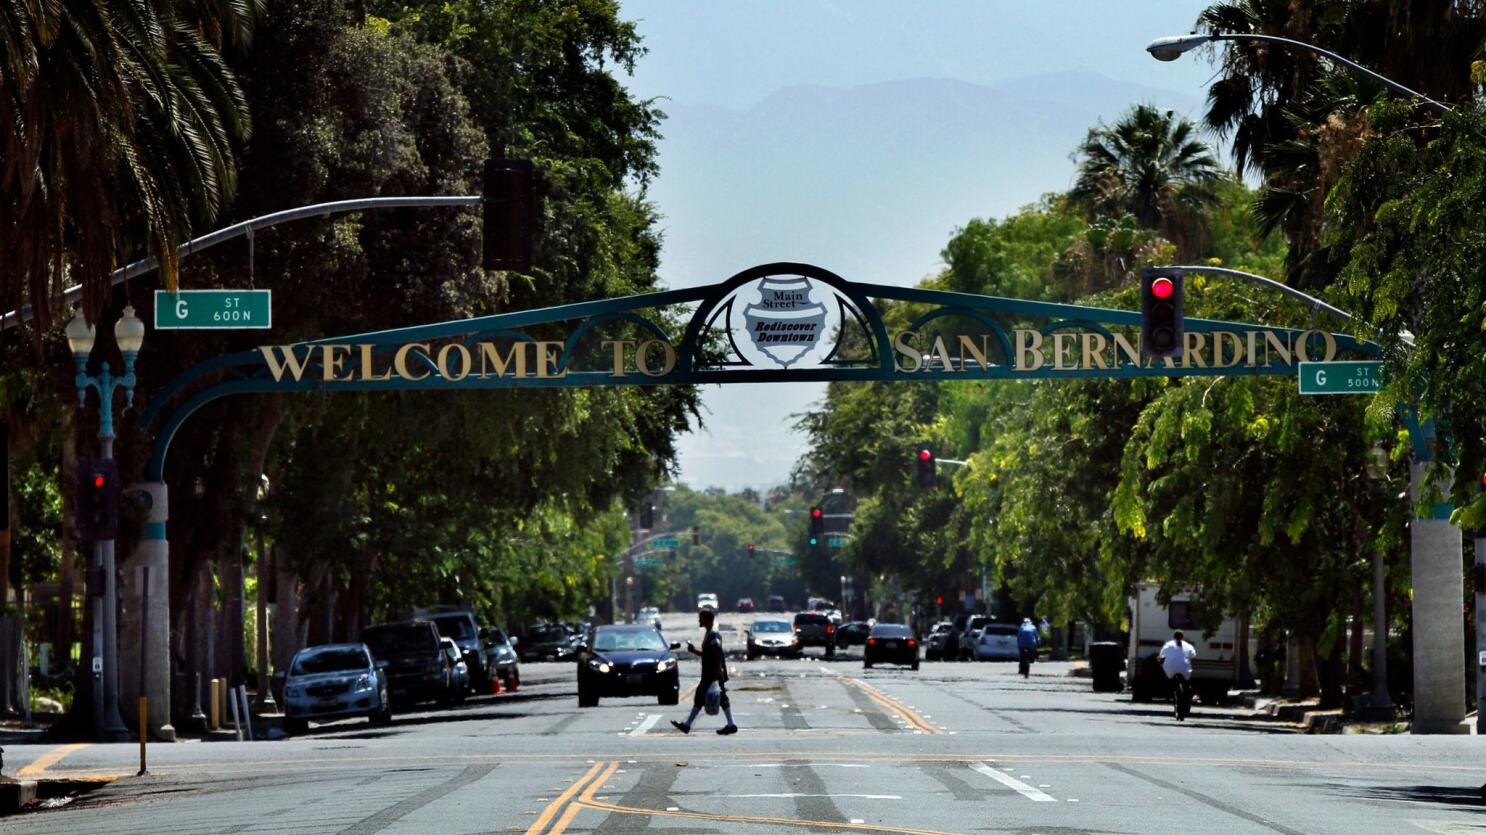 Thành phố San Bernardino khiến du khách rung động bởi vẻ đẹp tự nhiên của Nam California